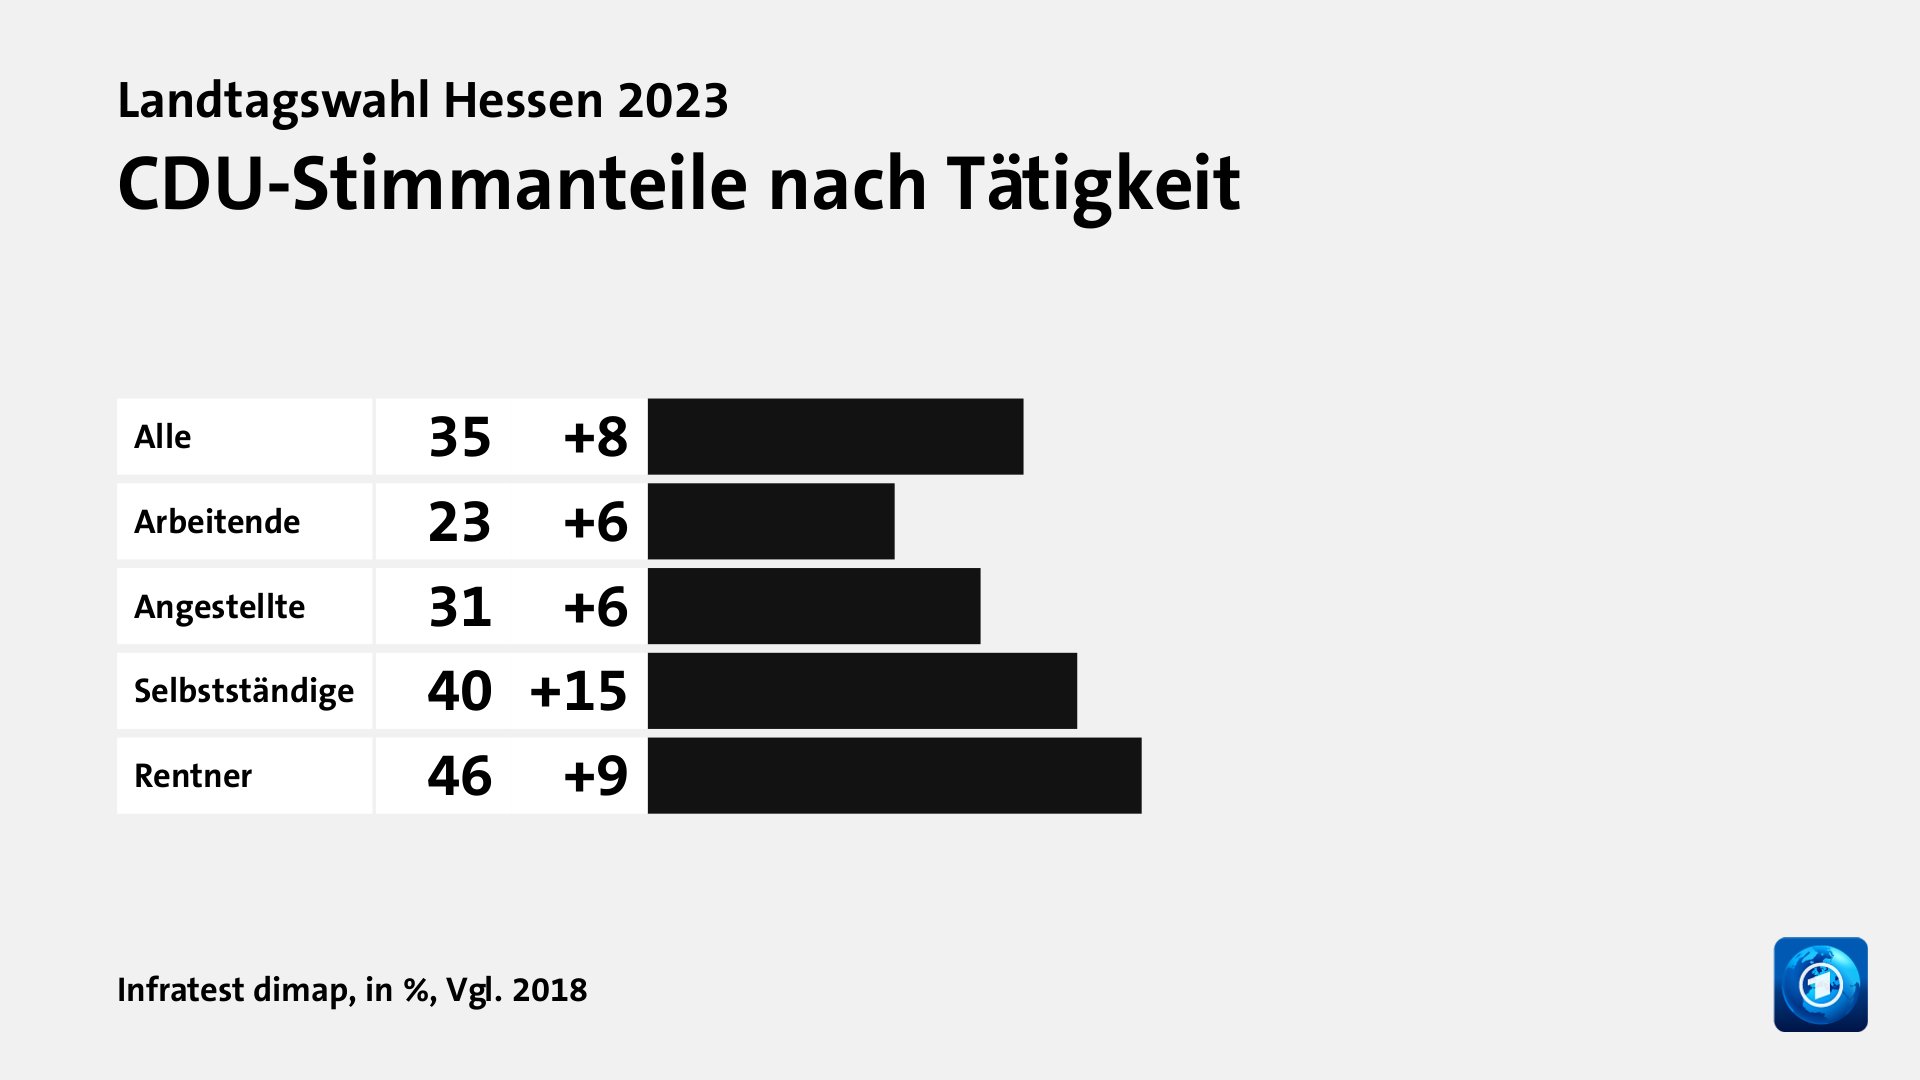 CDU-Stimmanteile nach Tätigkeit, in %, Vgl. 2018: Alle 35, Arbeitende 23, Angestellte 31, Selbstständige 40, Rentner 46, Quelle: Infratest dimap